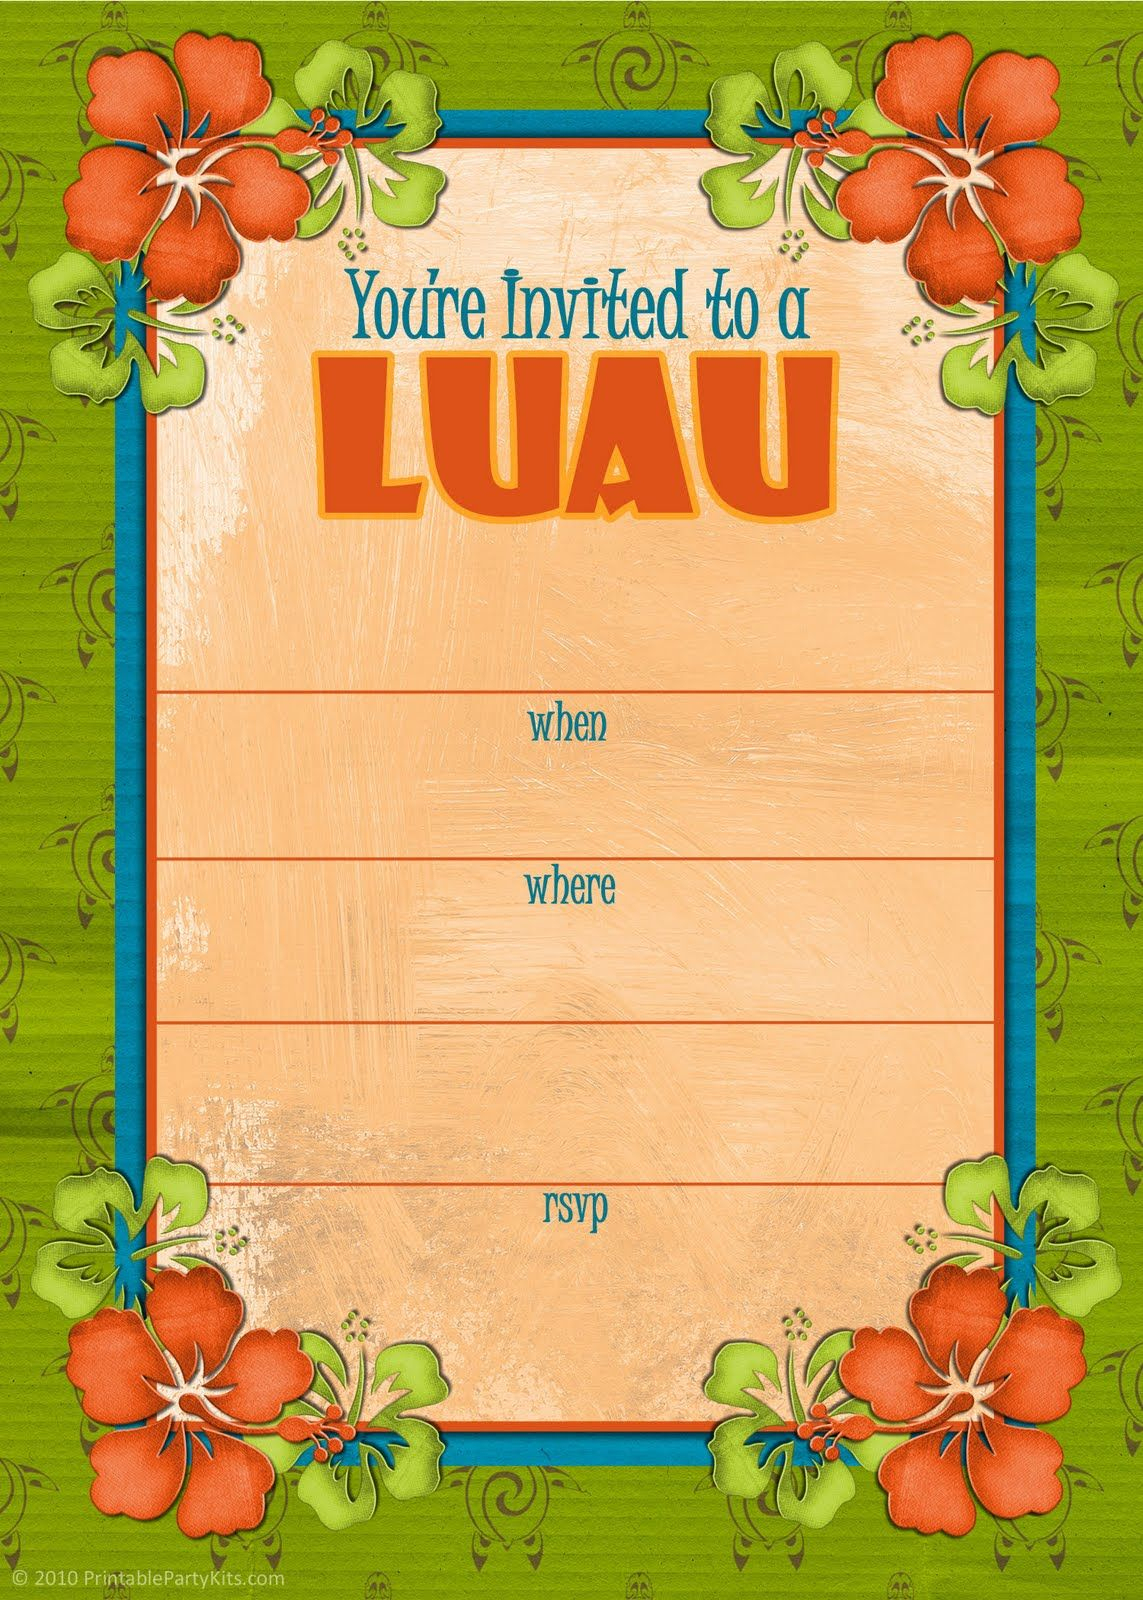 Free Printable Party Invitations: Free Hawaiian Luau Invites - Hawaiian Party Invitations Free Printable